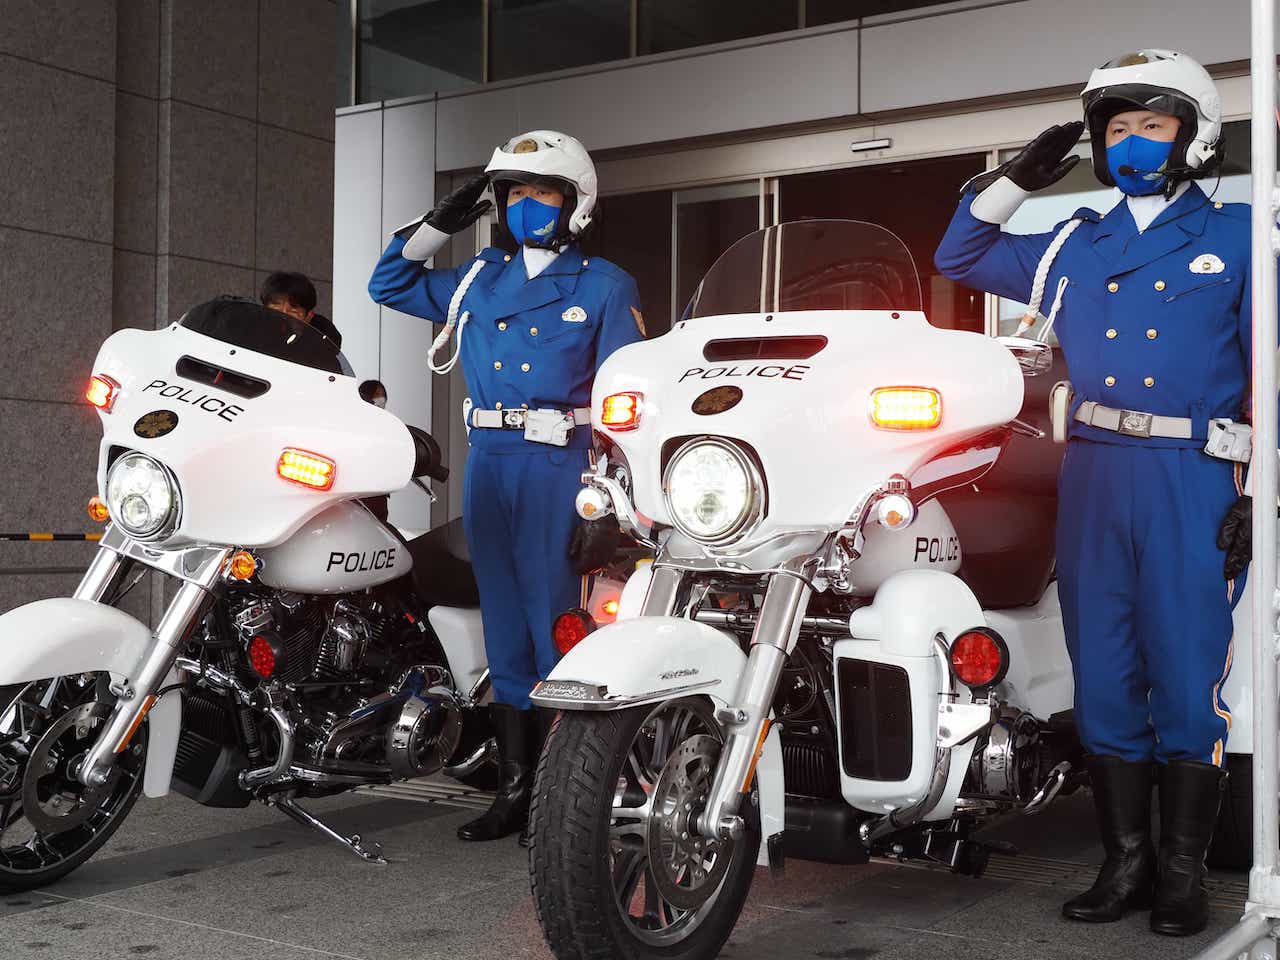 ハーレーの白バイ2台誕生! 日本史上最大排気量で栃木県警へ寄贈!!│WEB 